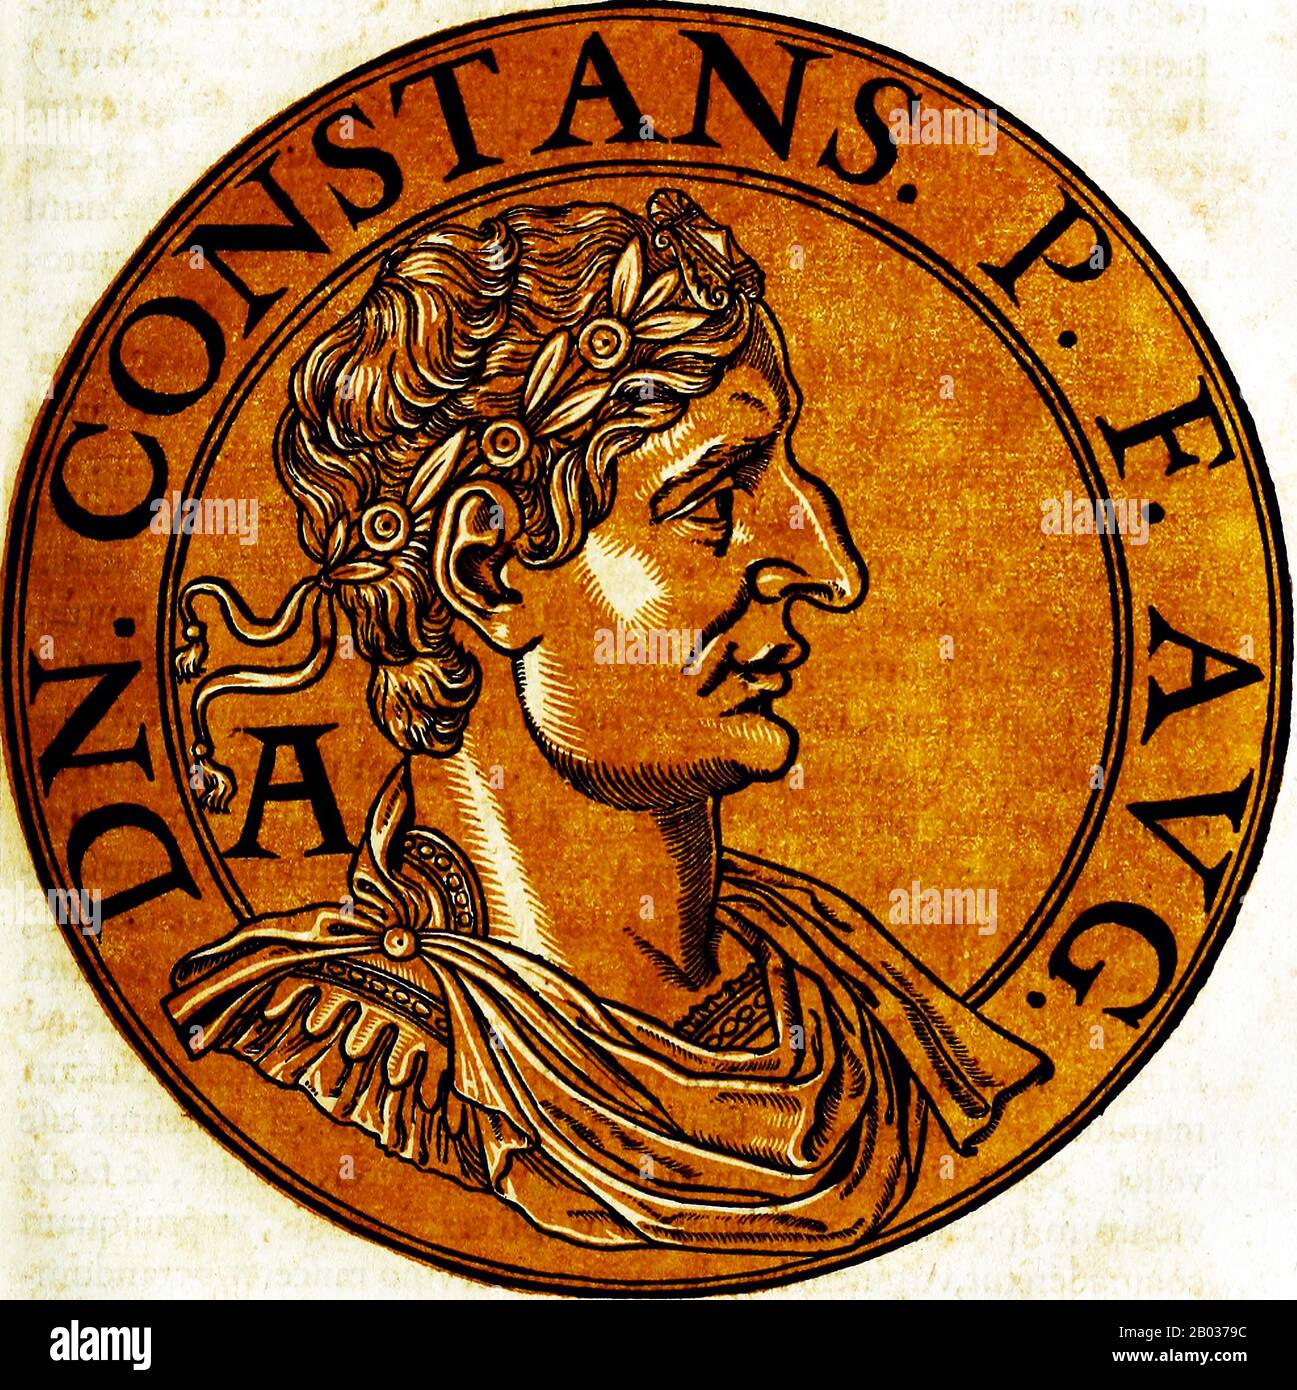 Constans i (323-350) era il quarto figlio di Costantino il Grande, fratello minore di Costantino II e Costanzo II Quando suo padre morì nel 337, Constantio divenne co-imperatore accanto ai fratelli, con la purga di Constantio di praticamente il resto della famiglia imperiale, assicurando che il potere rimanesse nelle loro mani. Constans ereditò le province centrali dell'Impero Romano nella suddivisione formale, ma fu inizialmente sotto la tutela di Costantino II a causa della sua giovane età. Suo fratello maggiore si lamentò che non aveva ricevuto la quantità di territorio che era suo dovuto come figlio maggiore, che guidava Foto Stock